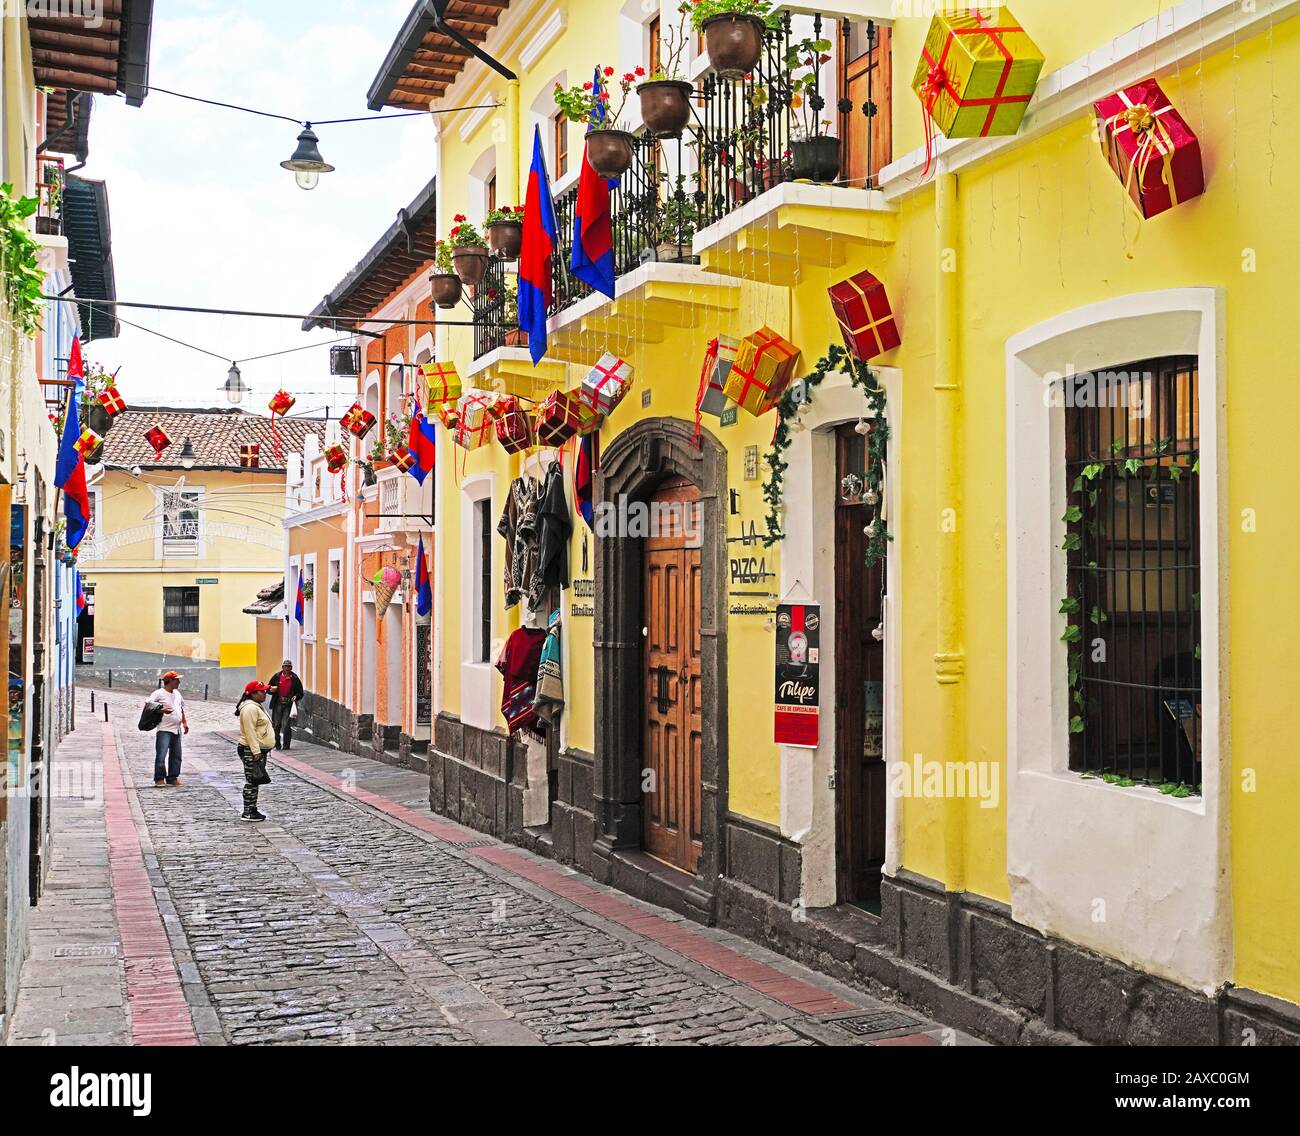 Die Straße La Ronda mit Kunsthandwerkerläden, Galerien und Restaurants, die bei Touristen beliebt sind, liegt in Der Altstadt von Quito, Ecuador. Stockfoto